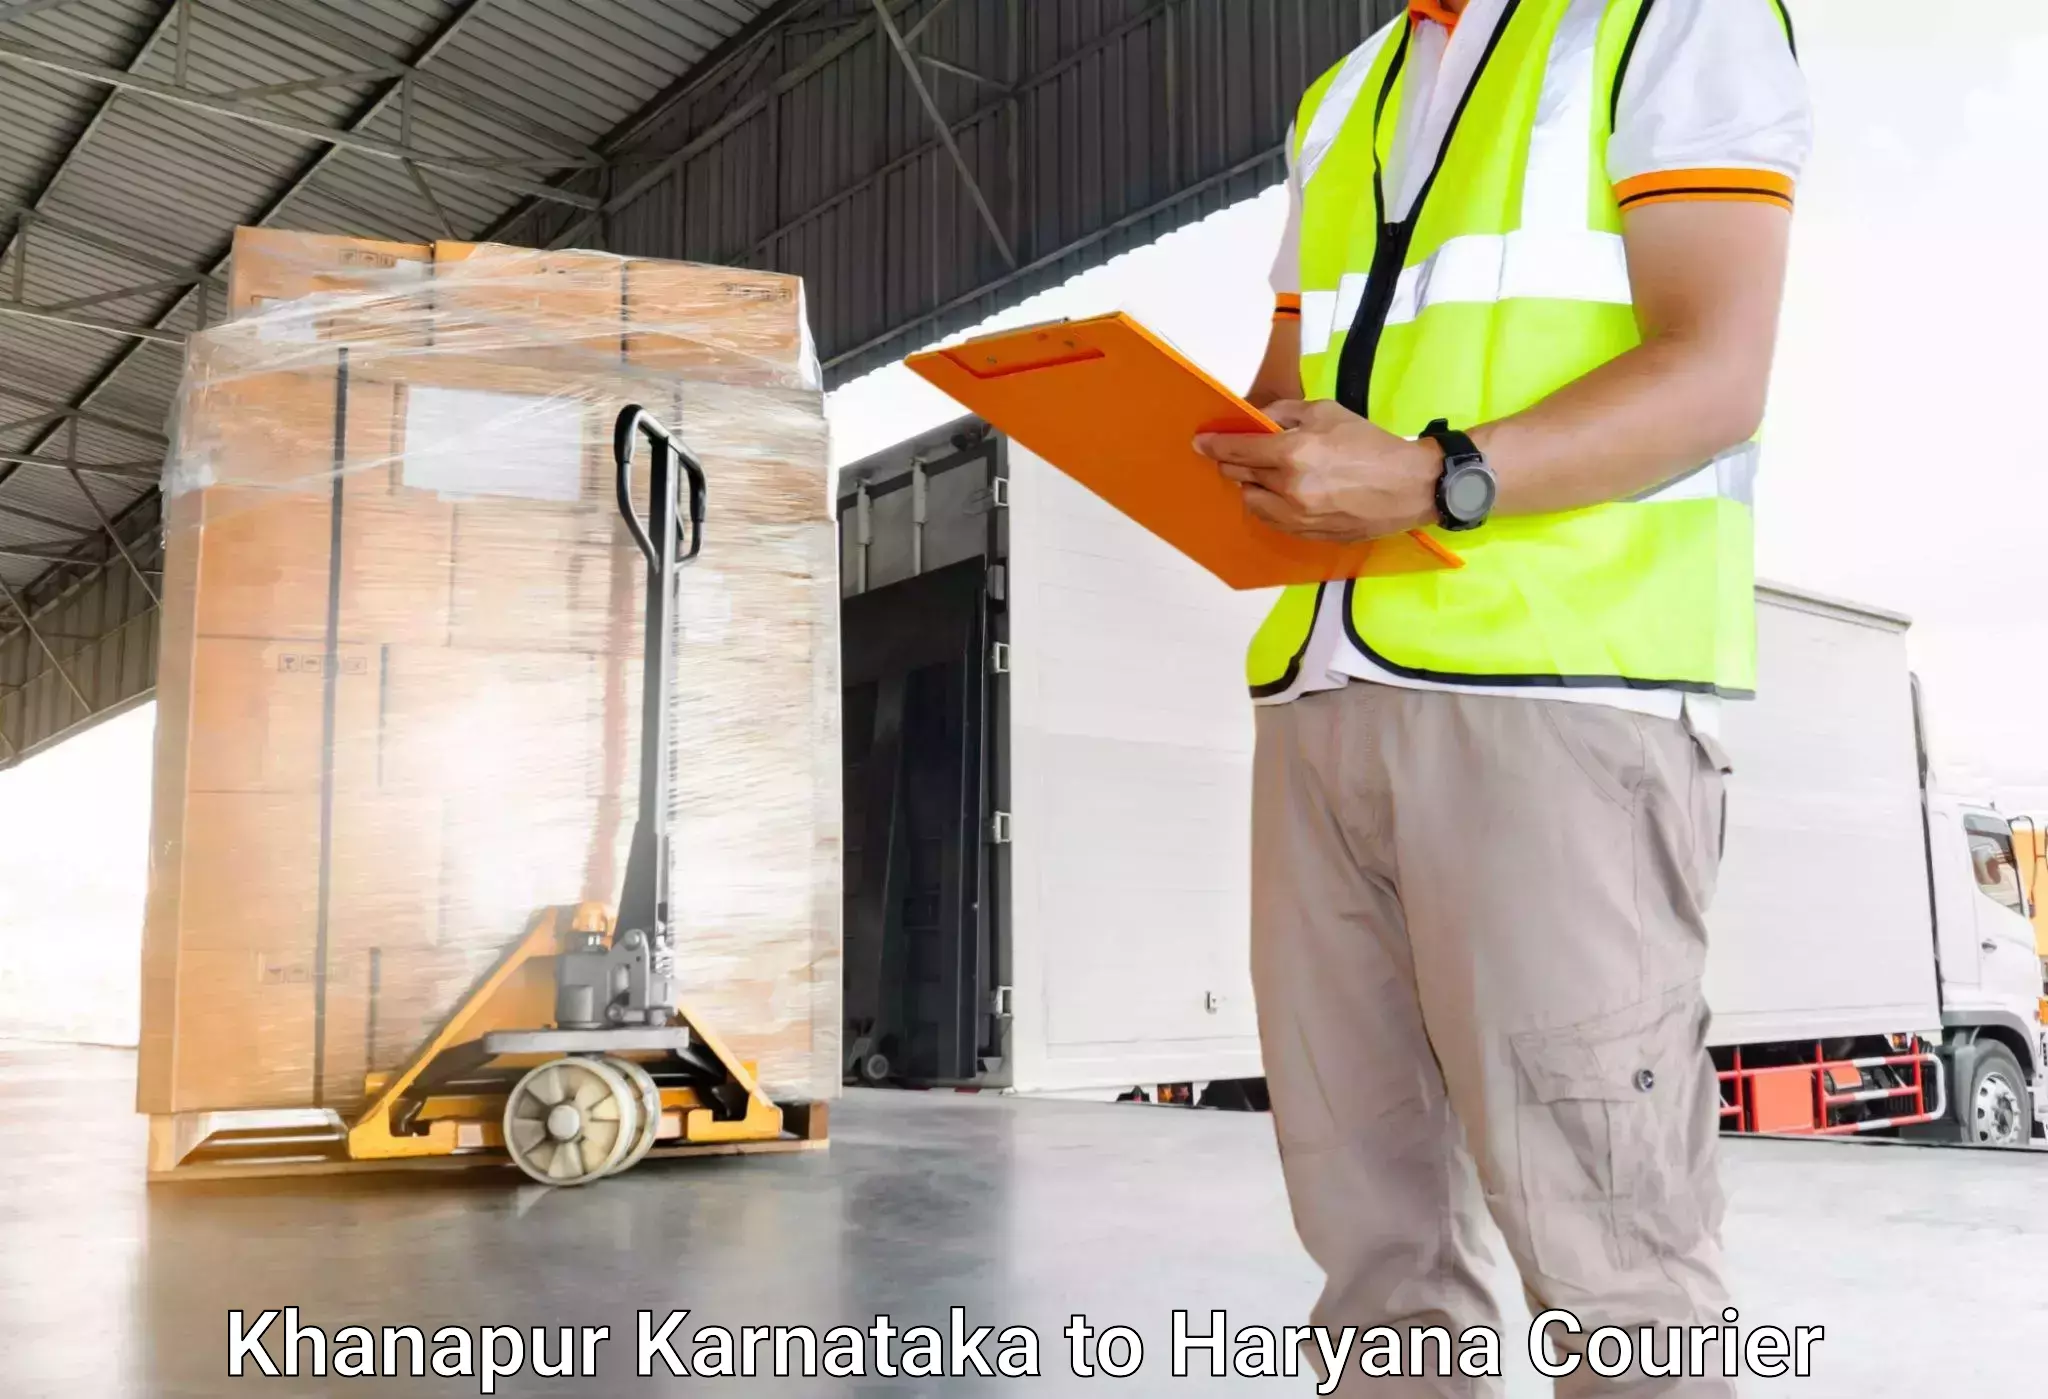 Unaccompanied luggage service Khanapur Karnataka to Haryana